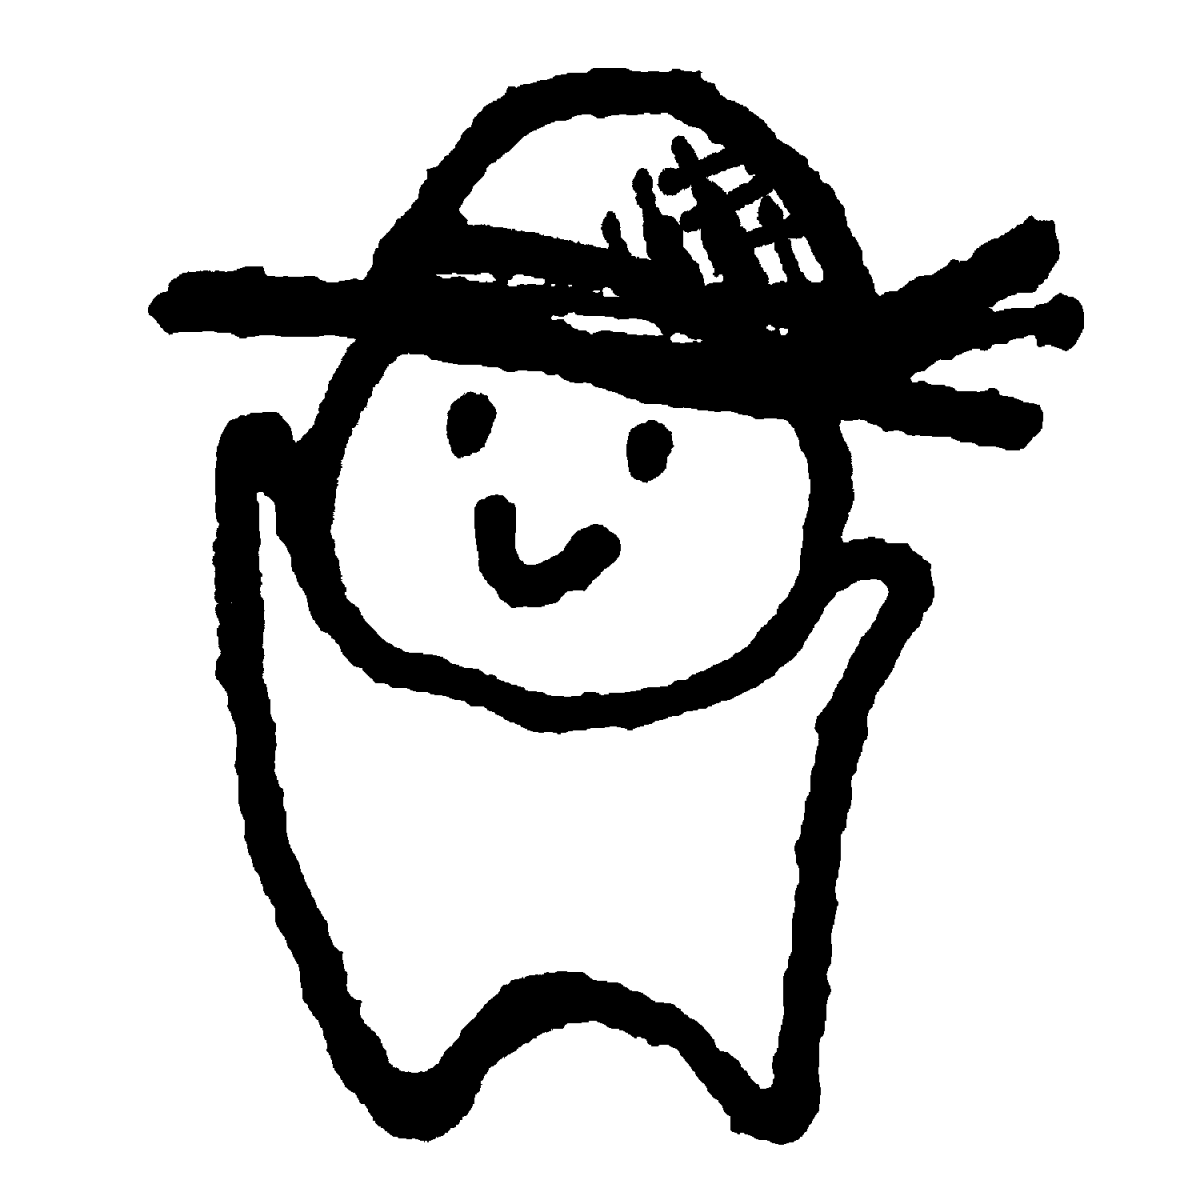 麦わら帽子をかぶるのイラスト / Wear a straw hat Illustration